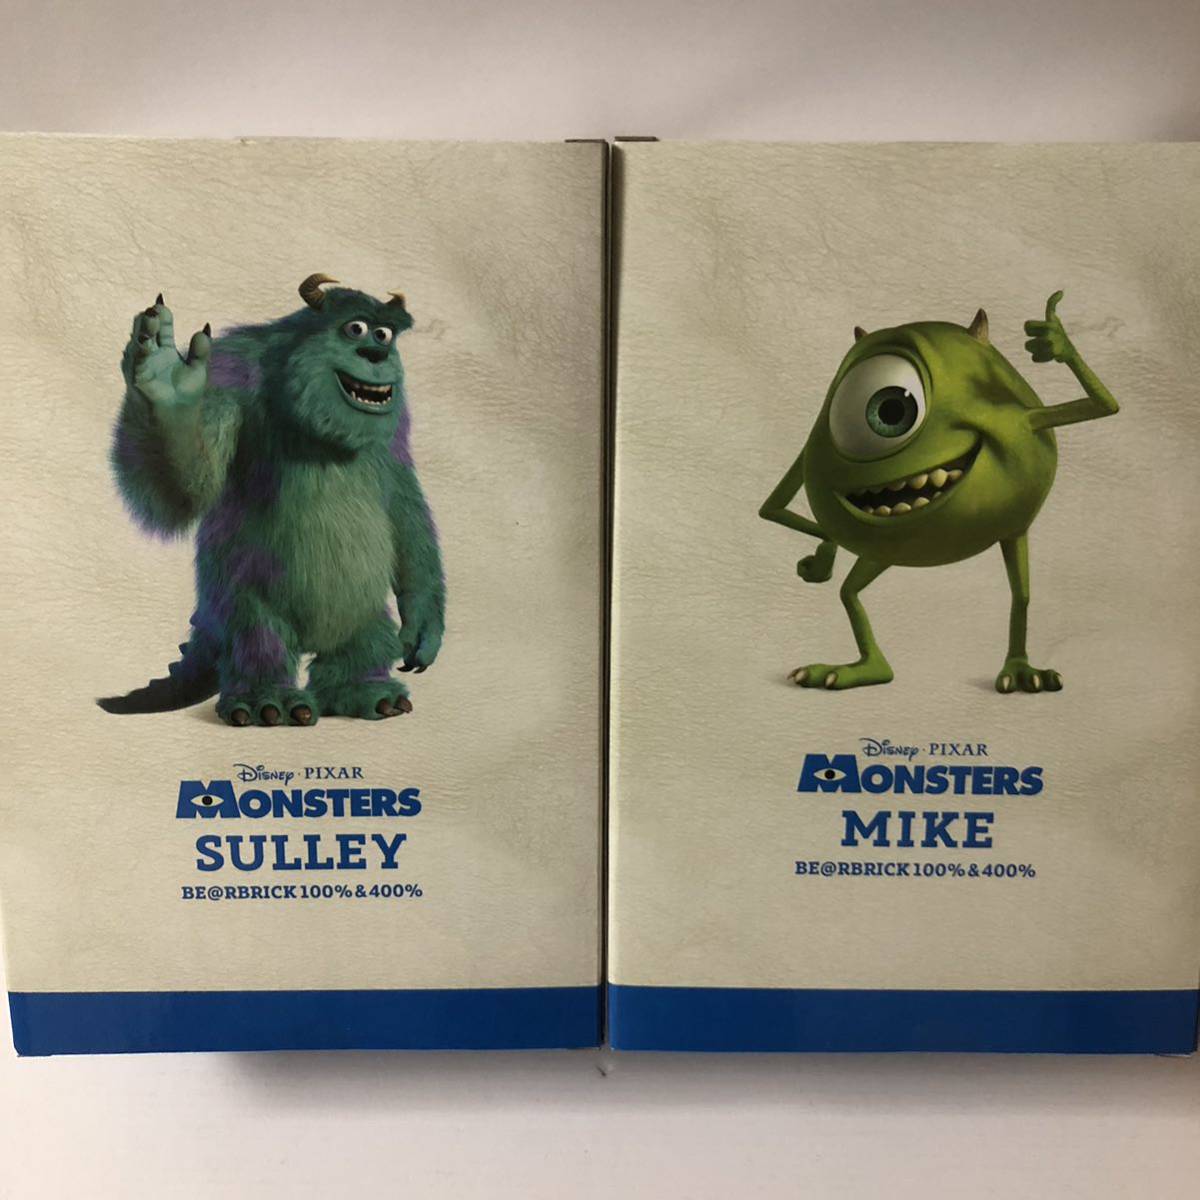 激レア ベアブリック モンスターズインク サリー&マイク セット 100%&400% (BE@RBRICK monsters,inc. sully mike Disney Pixar 新品未開封)